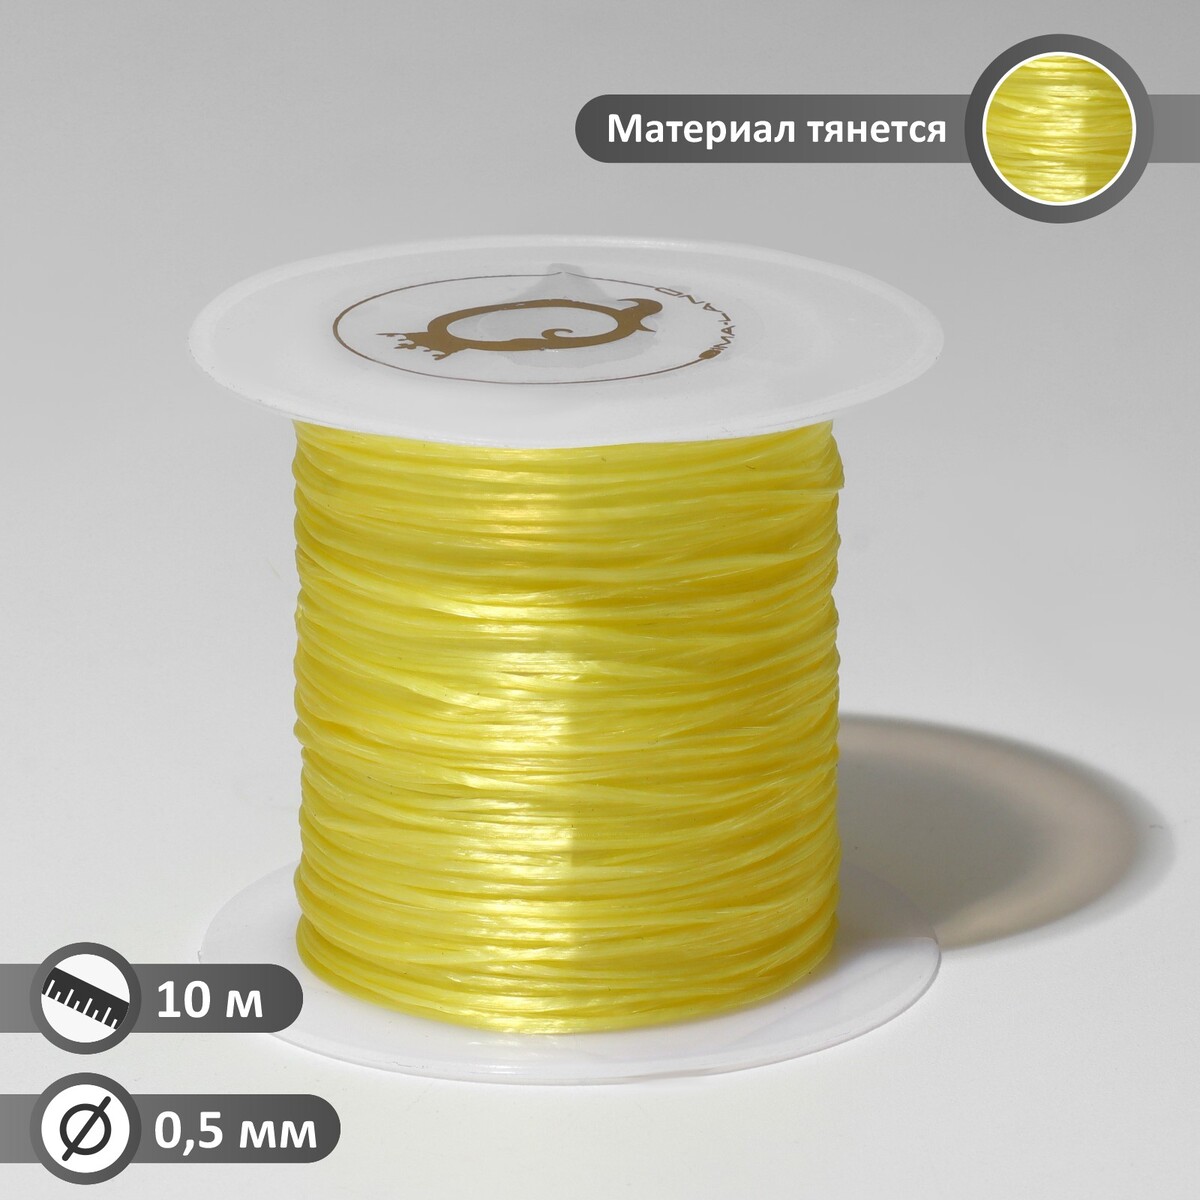 Нить силиконовая (резинка) d=0,5 мм, l=10 м (прочность 2250 денье), цвет желтый нить силиконовая резинка d 0 5 мм l 10 м прочность 2250 денье неоновый желтый